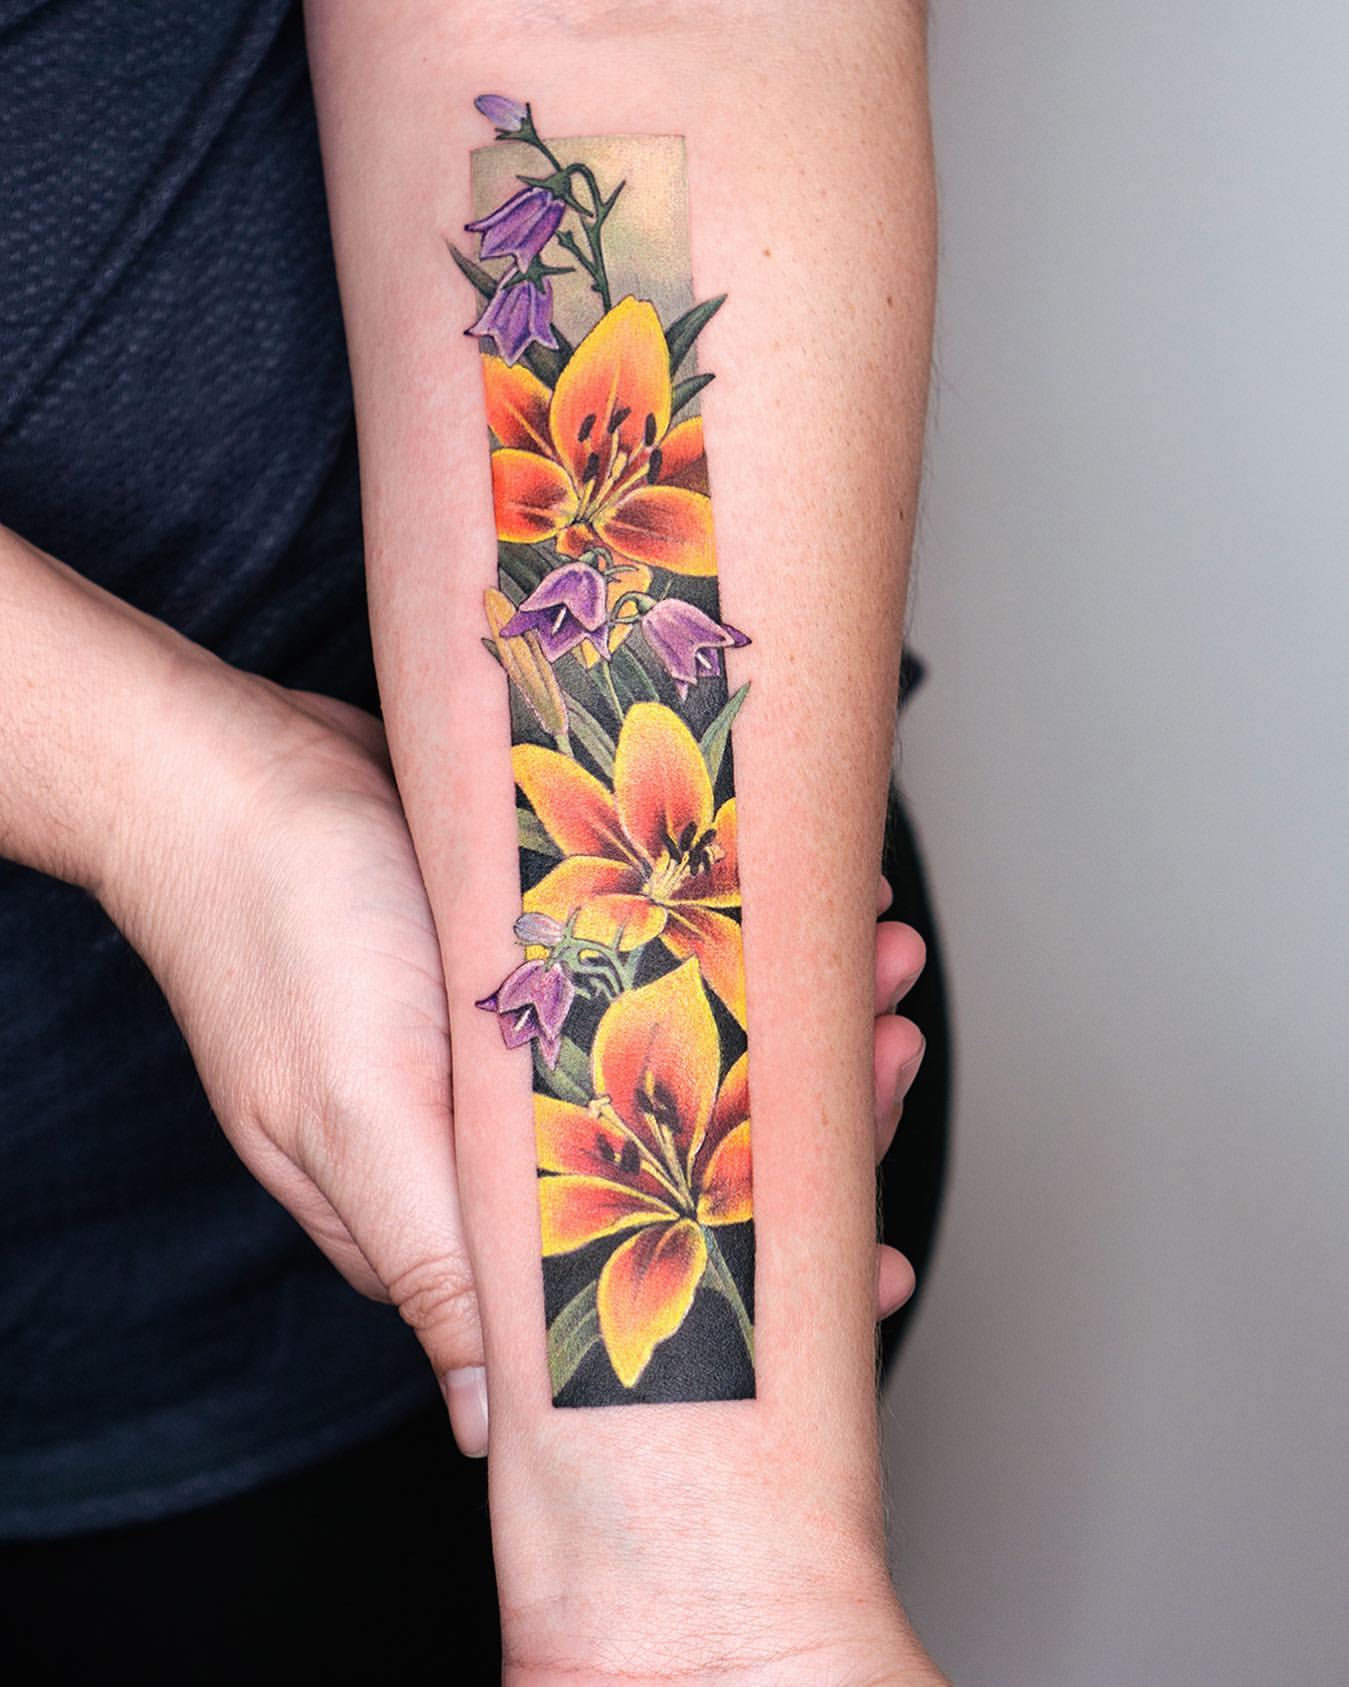 Tattoo uploaded by Bindy • #blueflower #blue #flowers #floral #botanical &  #leaves #foliage - #script - #tattoo by #artist #wooritattoo @woori_tattoo  • Tattoodo